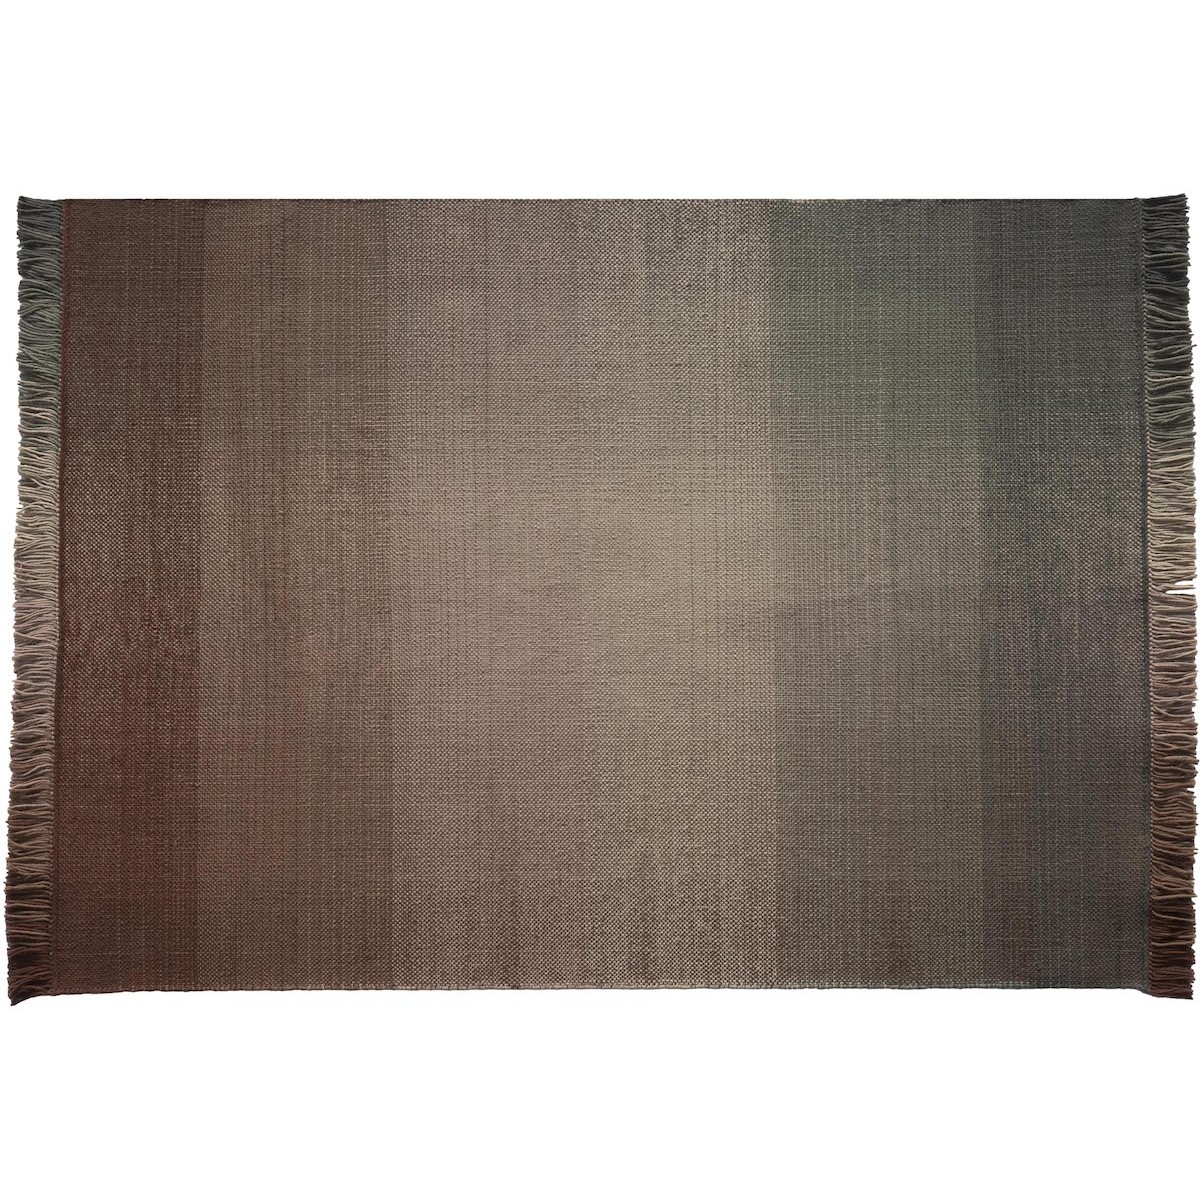 250x350cm - Palette 4 - tapis polyéthylène Shade